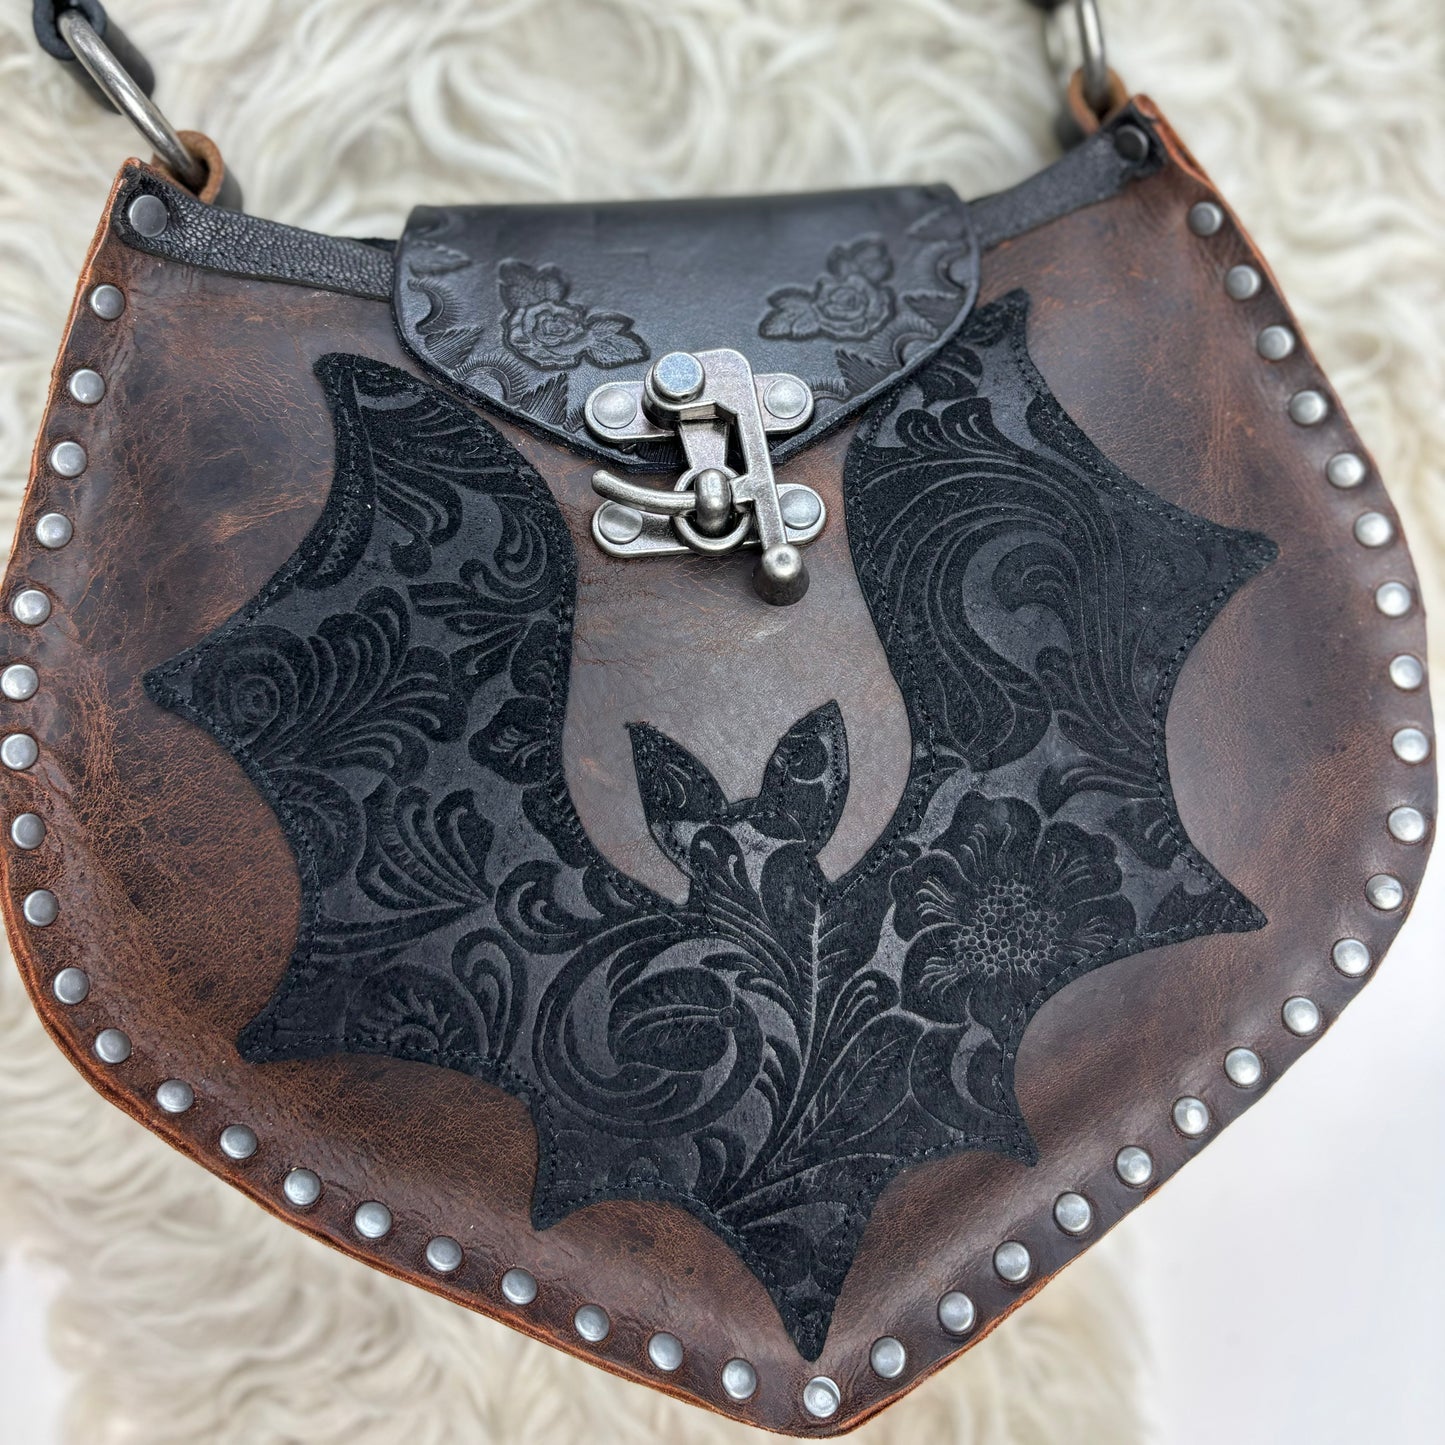 Gothic Bat Bag in Rustic Dark Brown